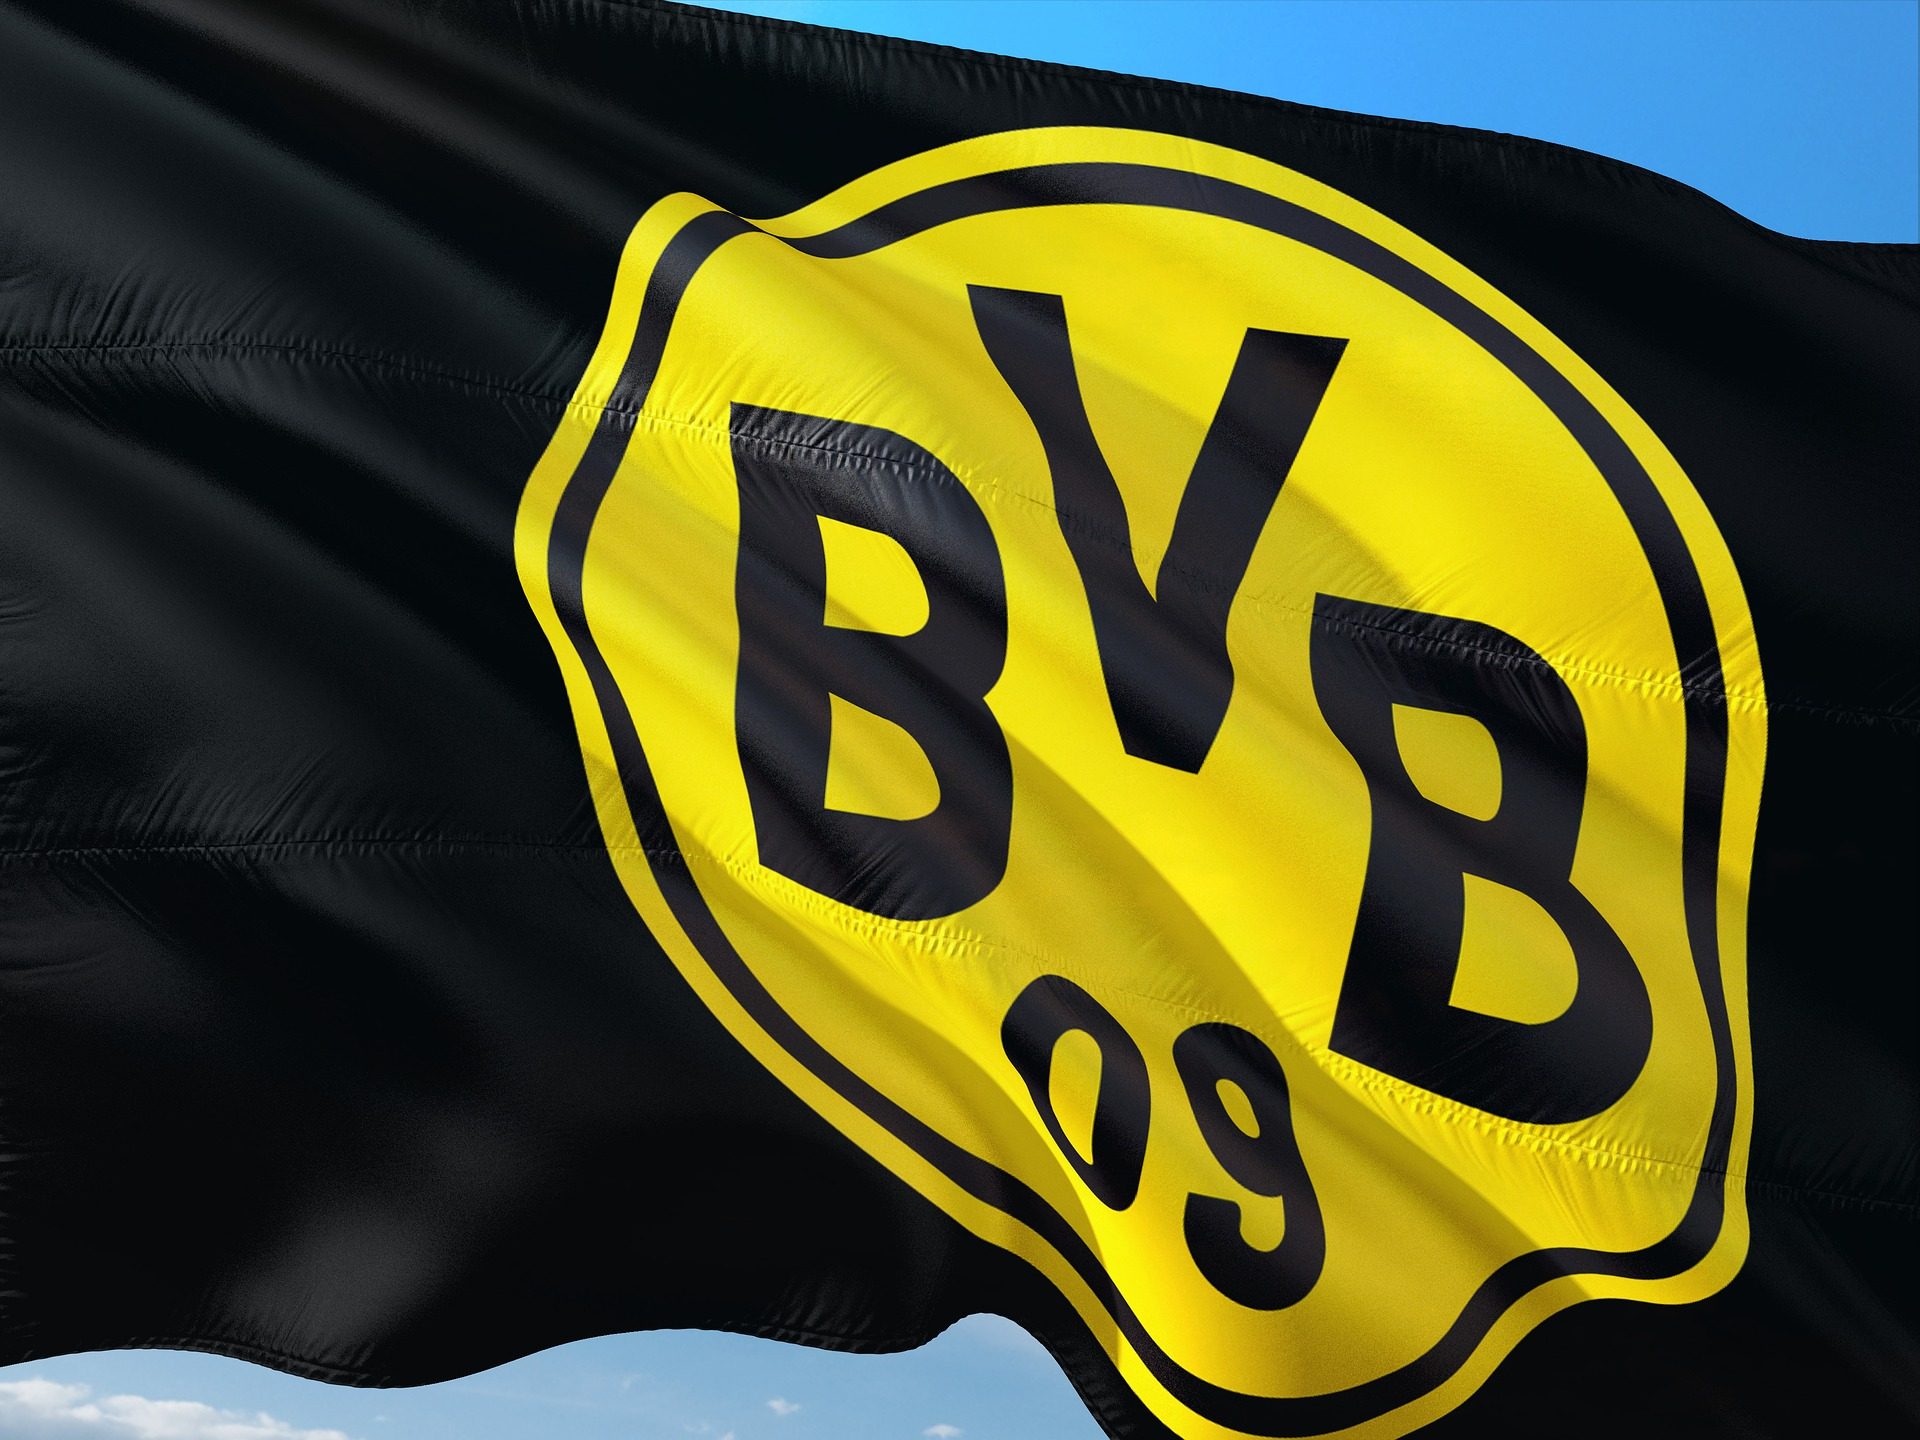 Günstige Bundesliga Tickets für BVB ab 149,00€ Ticket + Hotel